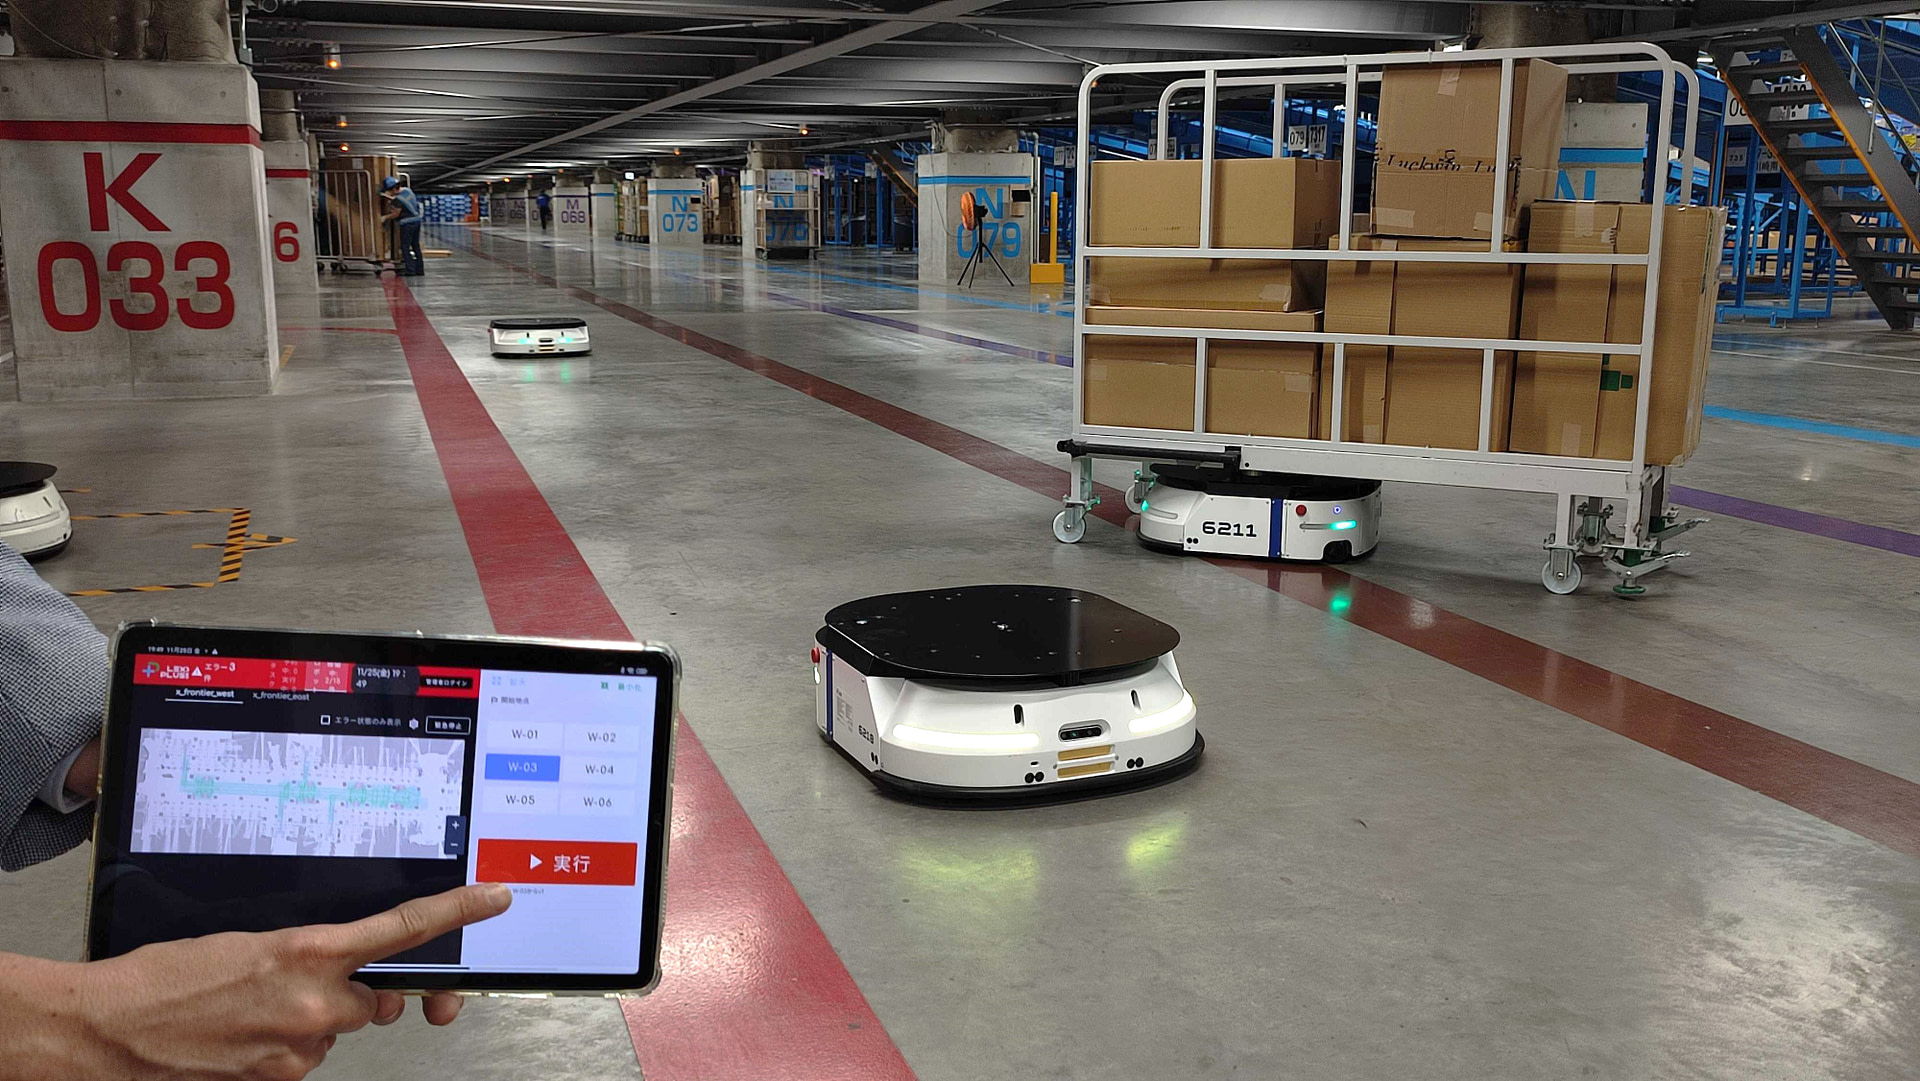 LexxPluss warehouse robots travels down aisle